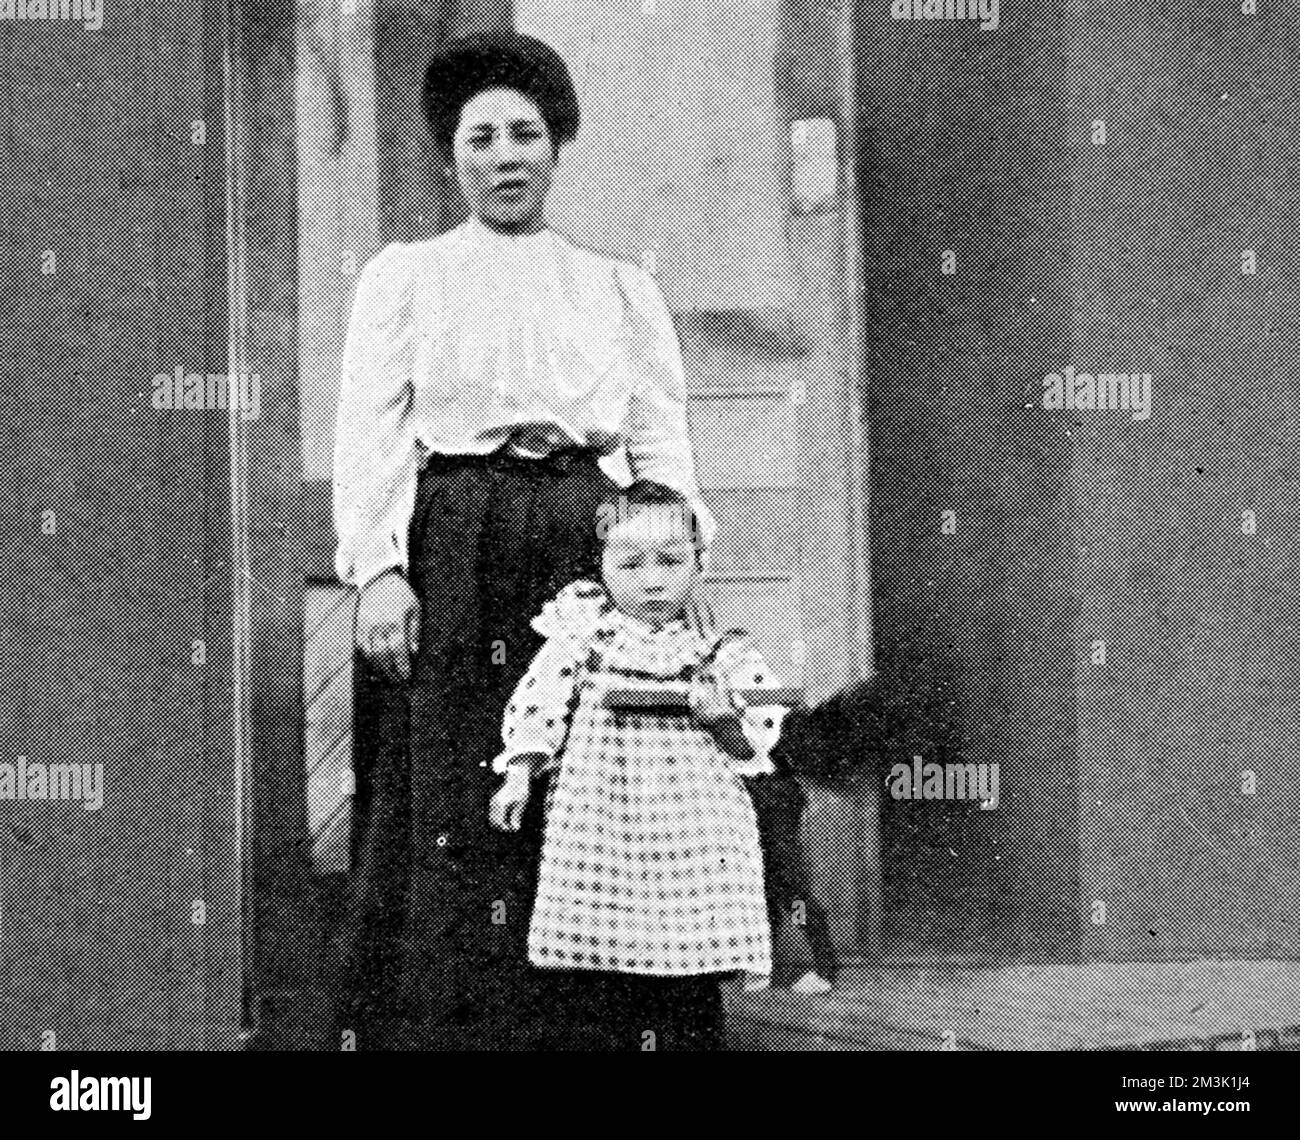 Foto einer japanischen Frau und ihres Kindes in westlicher Kleidung, was auf eine schnelle Integration nach der Einwanderung in die Vereinigten Staaten von 1907 hinweist. Datum: 1907 Stockfoto